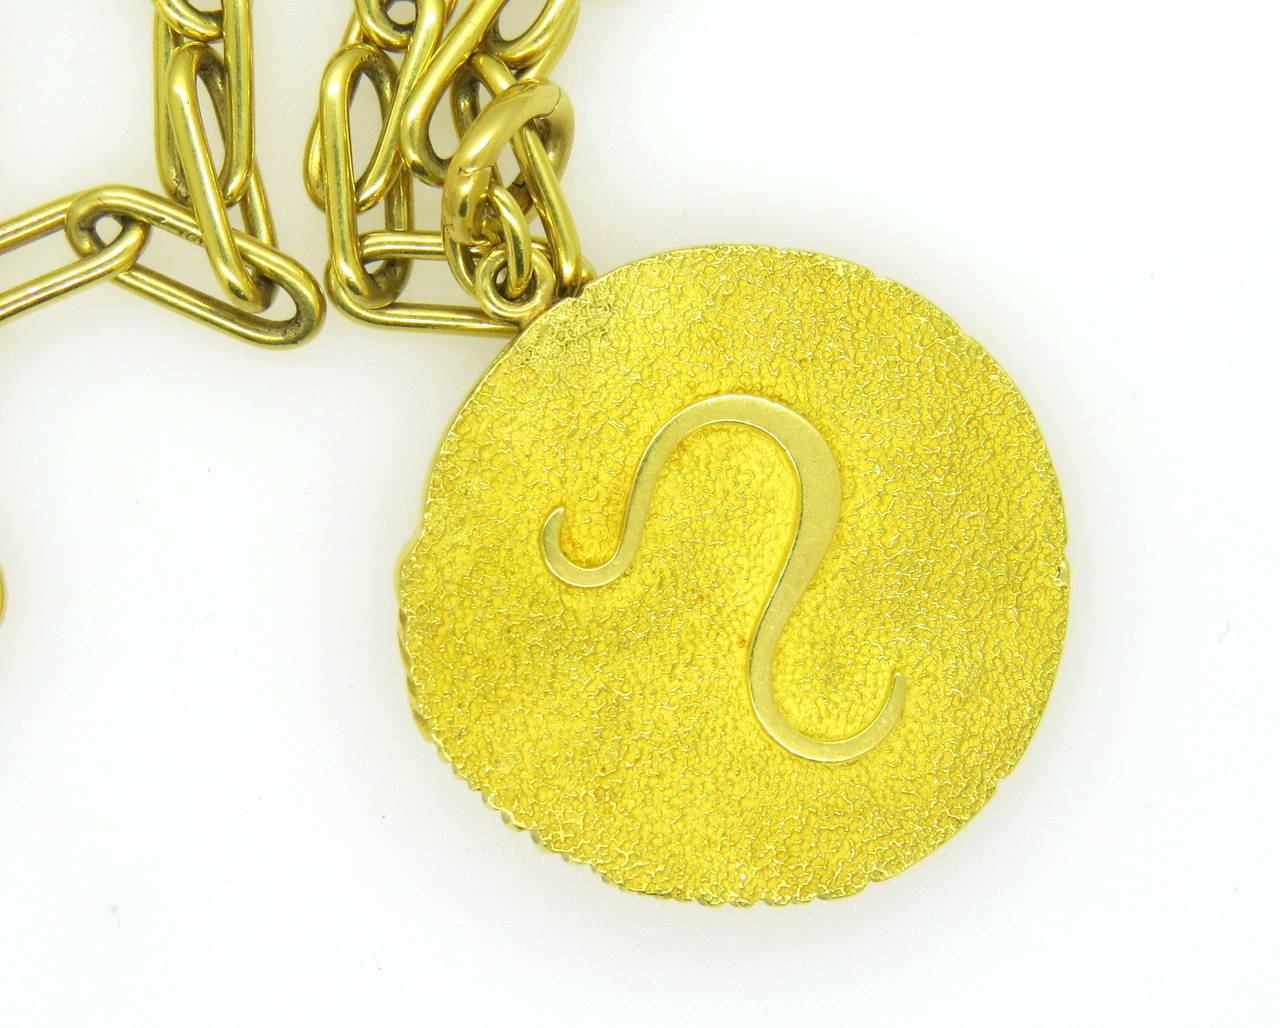 tiffany zodiac necklace gold